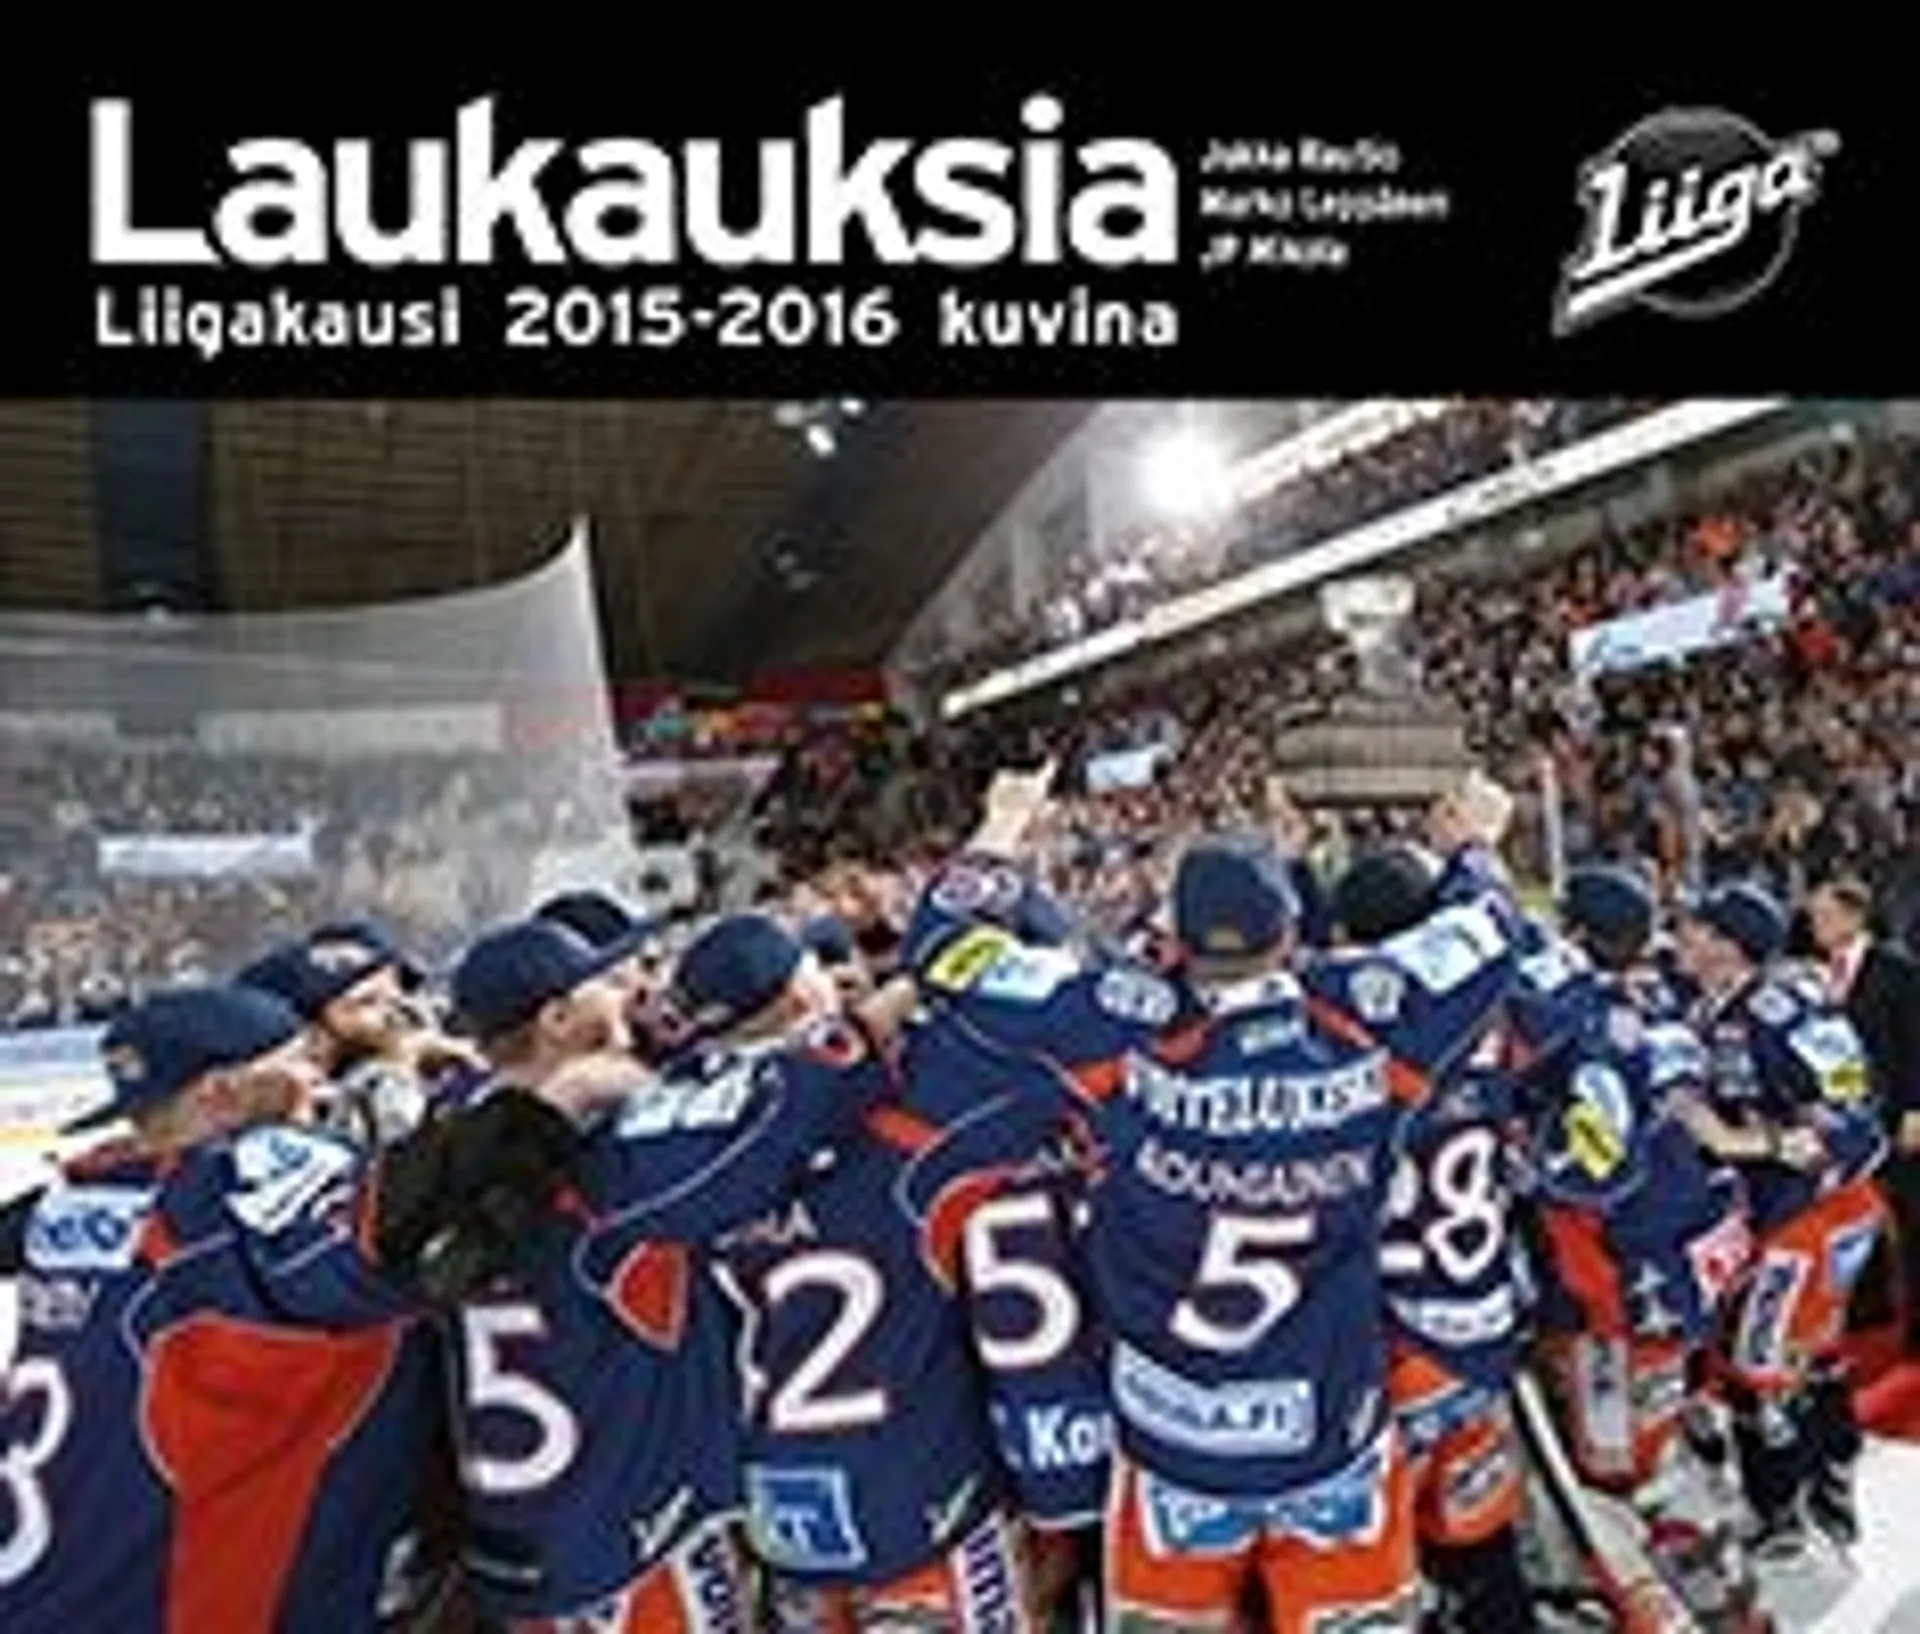 Leppänen, Laukauksia 2015-2016